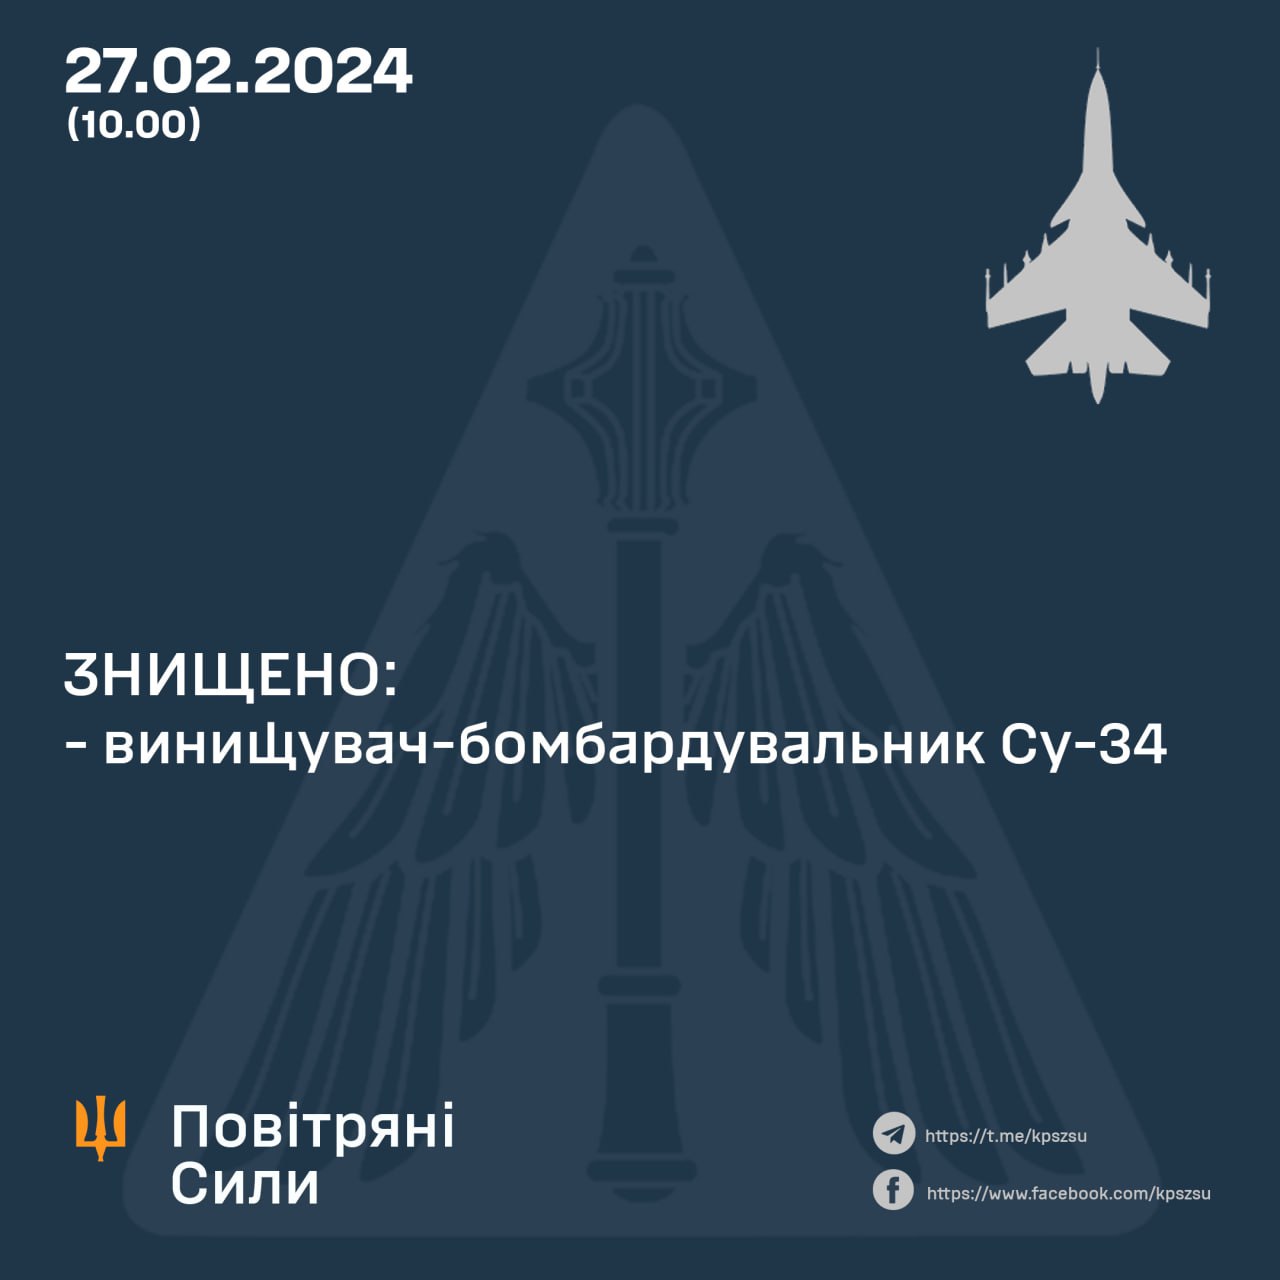 уничтожен очередной российский истребитель-бомбардировщик Су-34